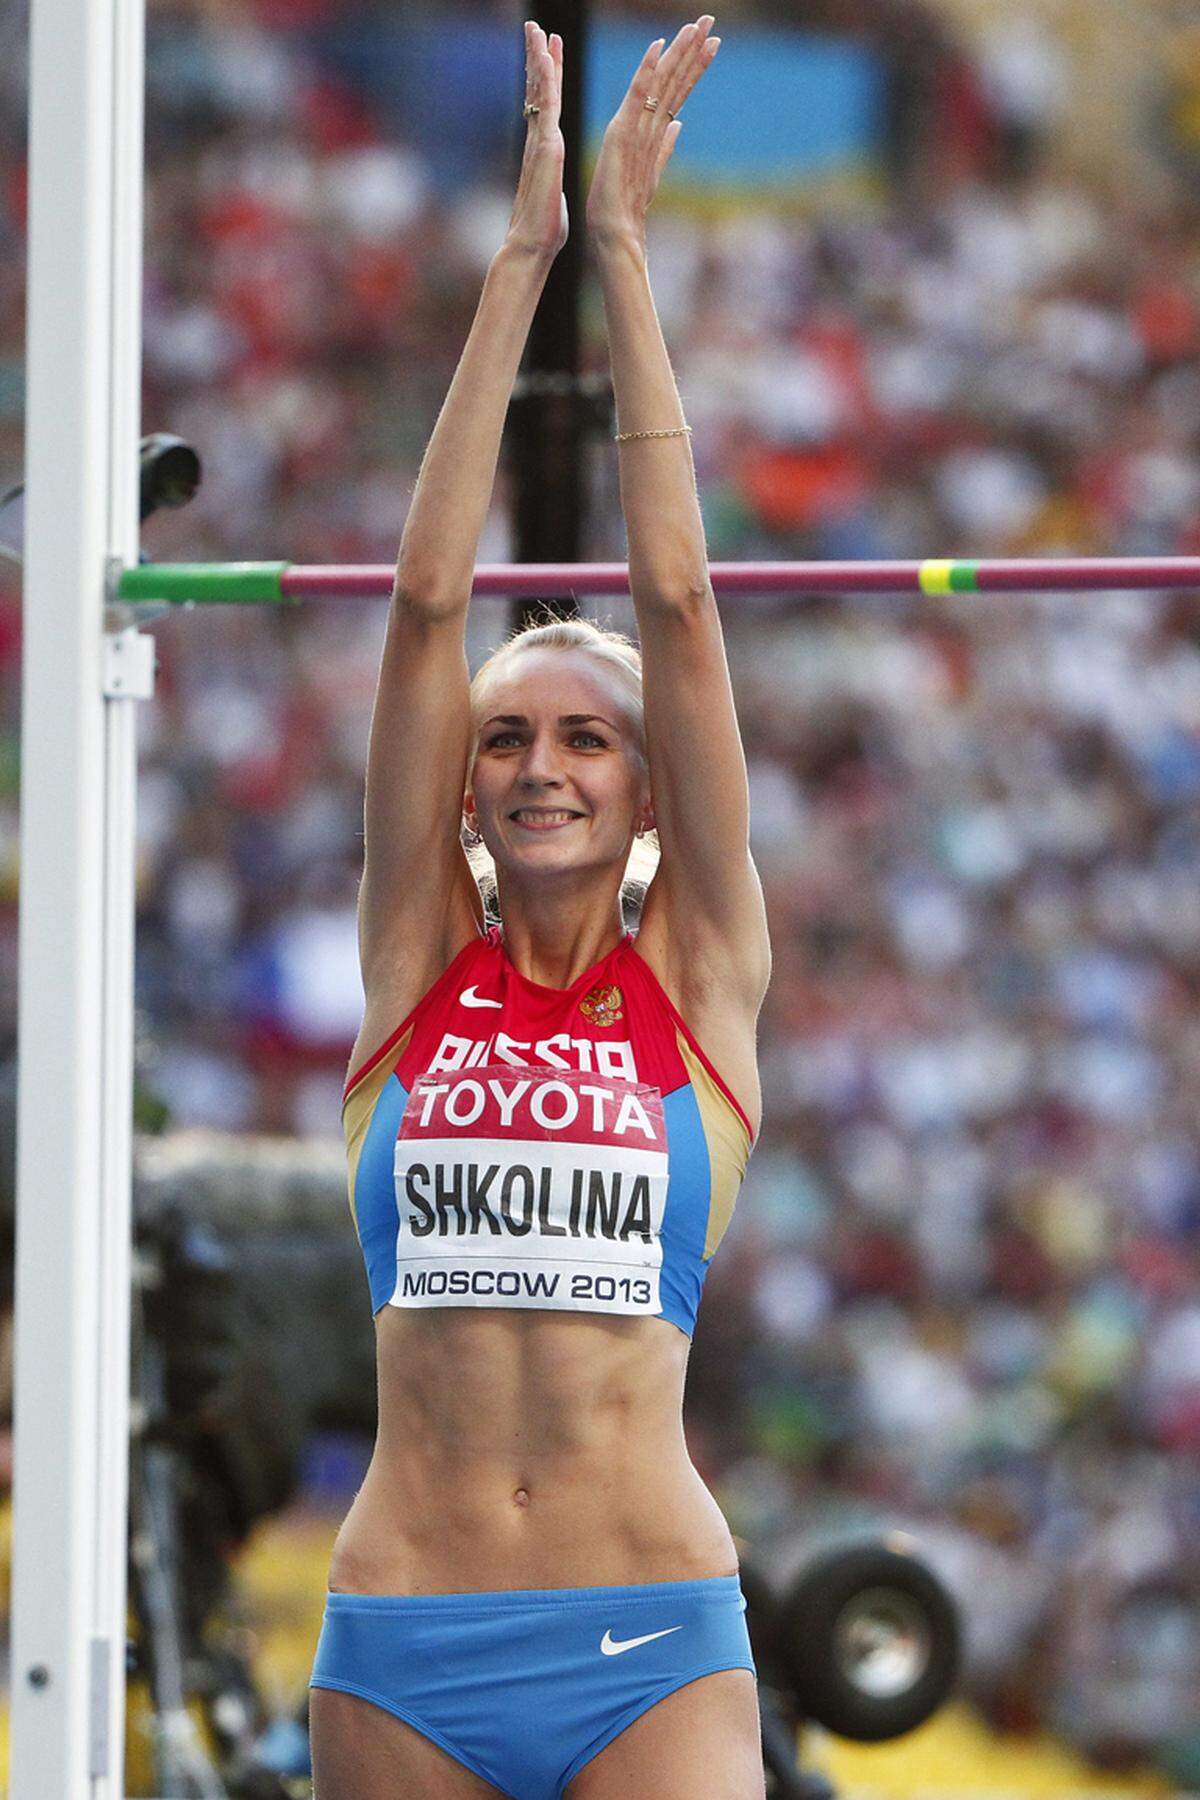 Einen vielumjubelten Heimerfolg gibt es für Russland im Hochsprung der Frauen. Svetlana Shkolina überquert als einzige Athletin mit einer persönlichen Bestleistung die 2,03 Meter und kommt so zu WM-Gold. Die US-Amerikanerin Brigetta Barrett gewinnt Silber vor der Spanierin Ruht Beitia.